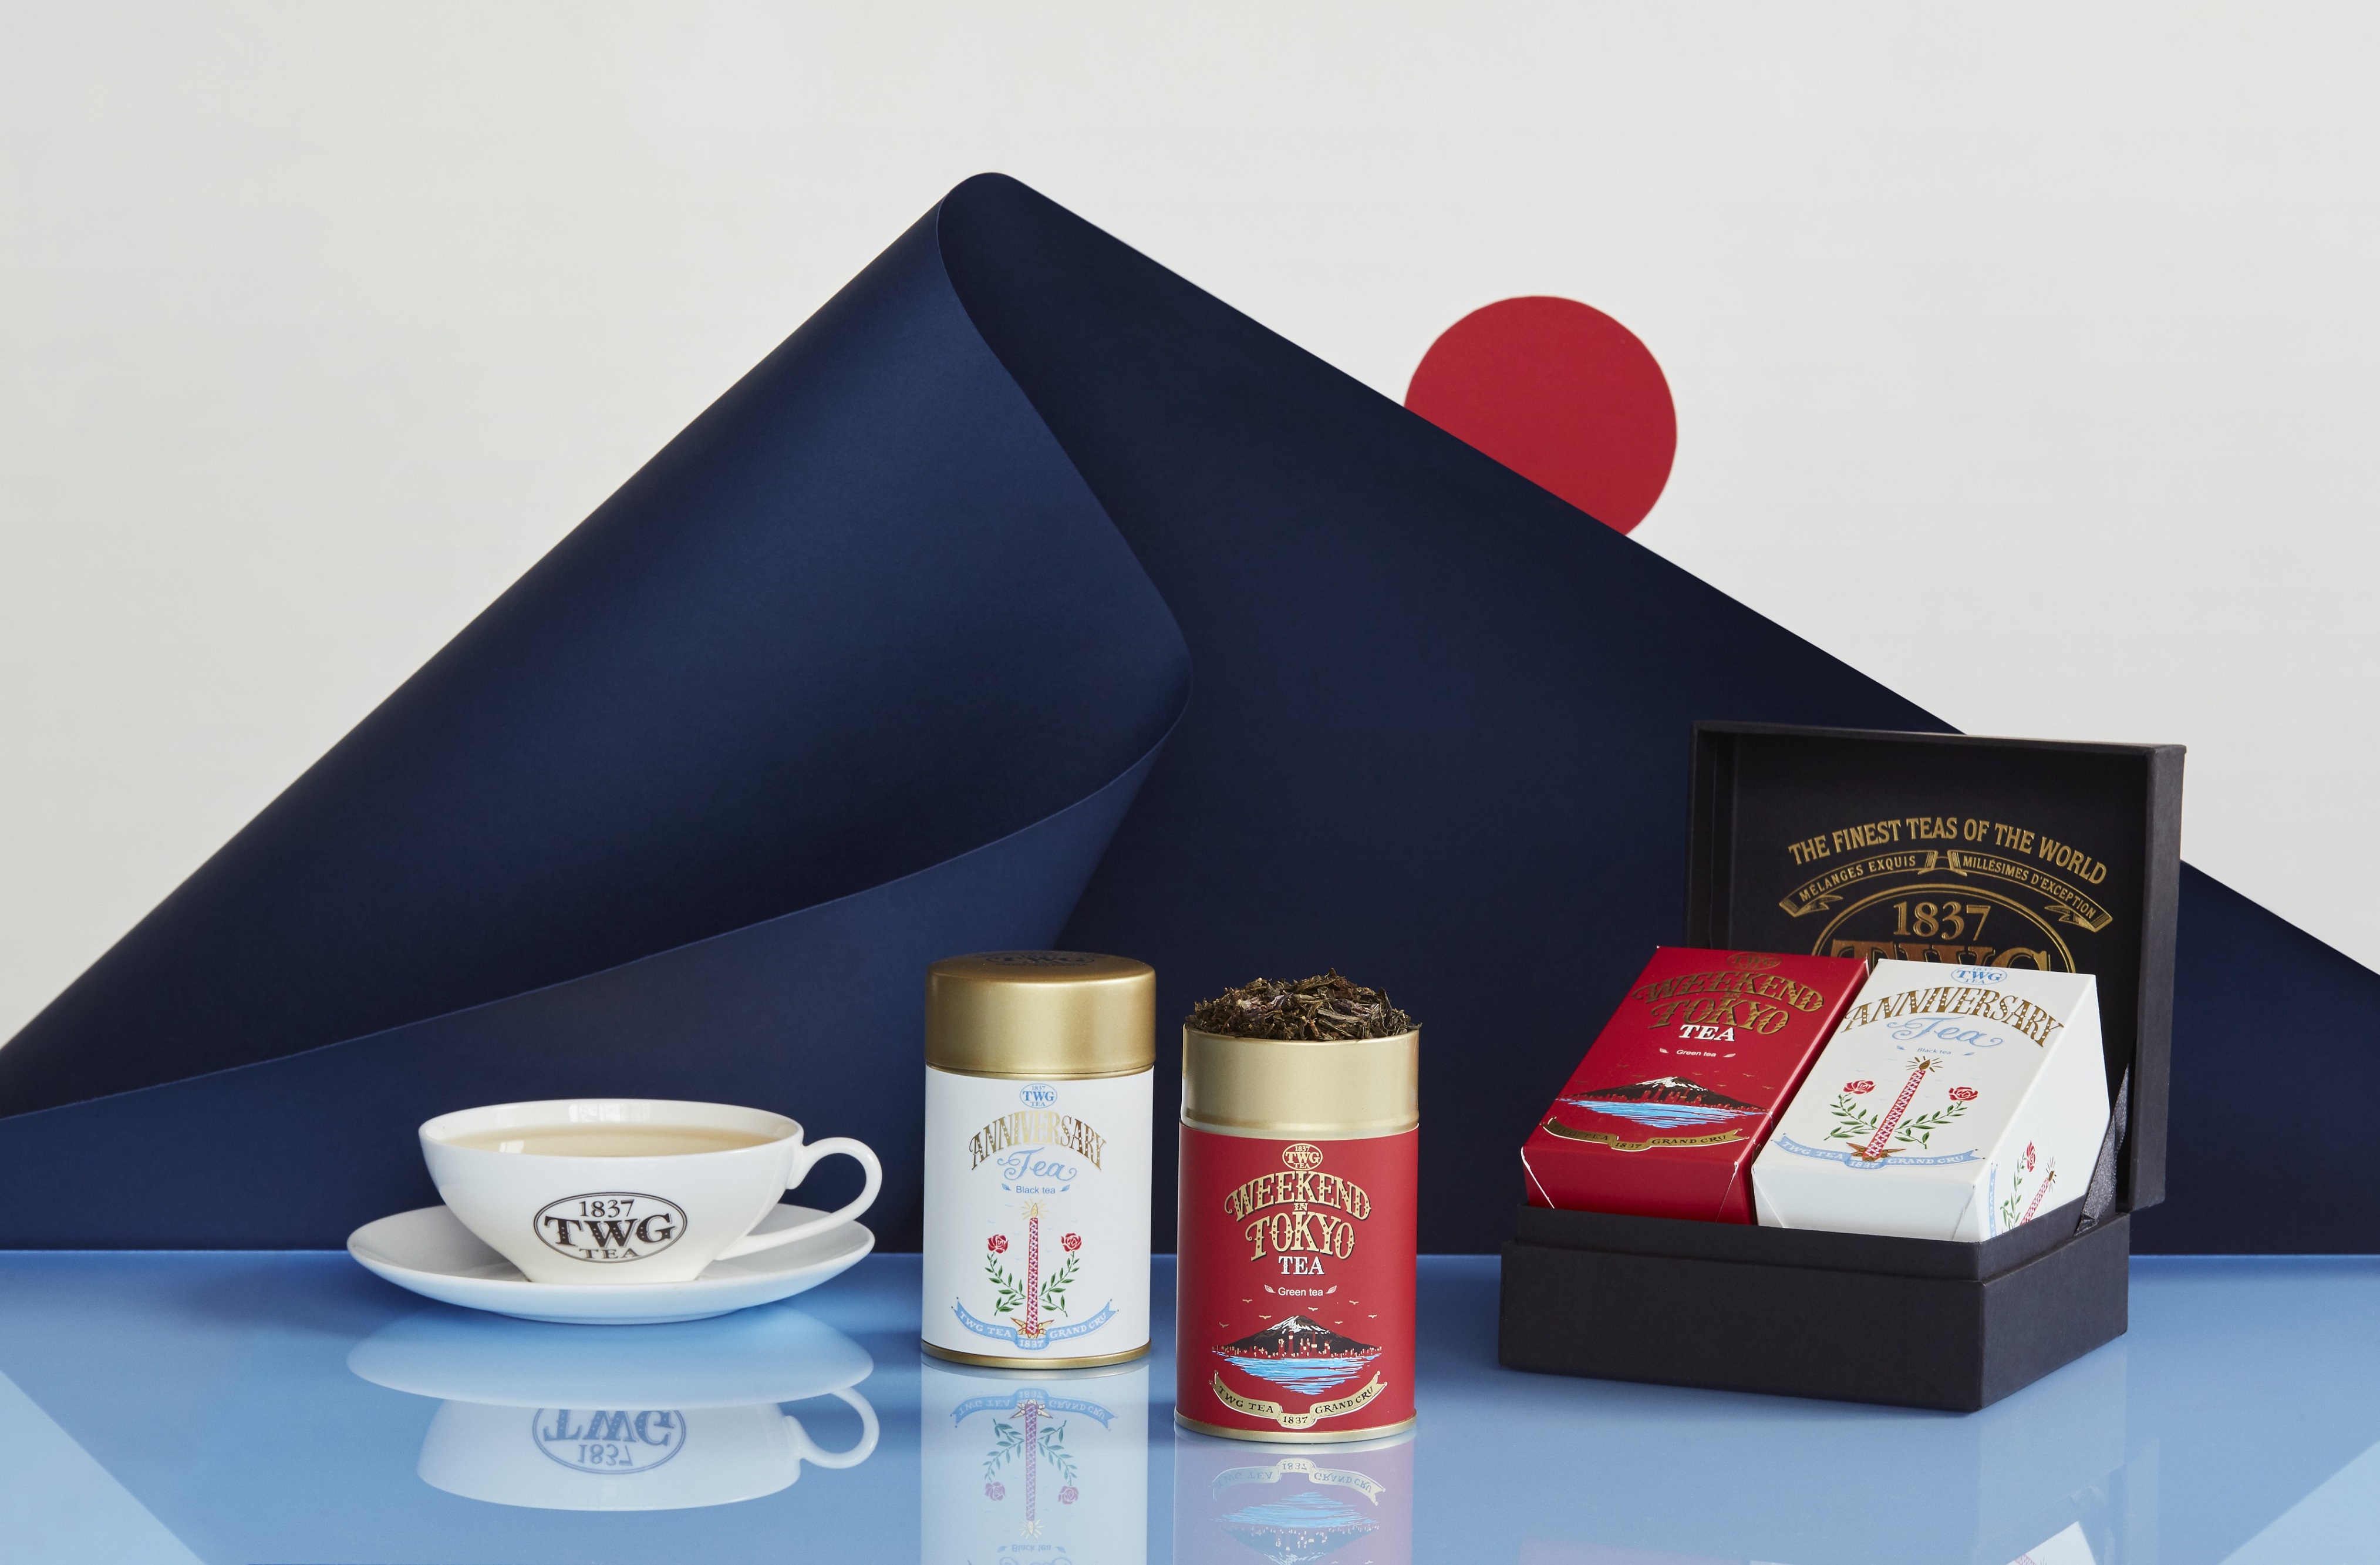 10周年記念】TWG Tea 日本上陸10周年を記念し、限定商品『Celebration